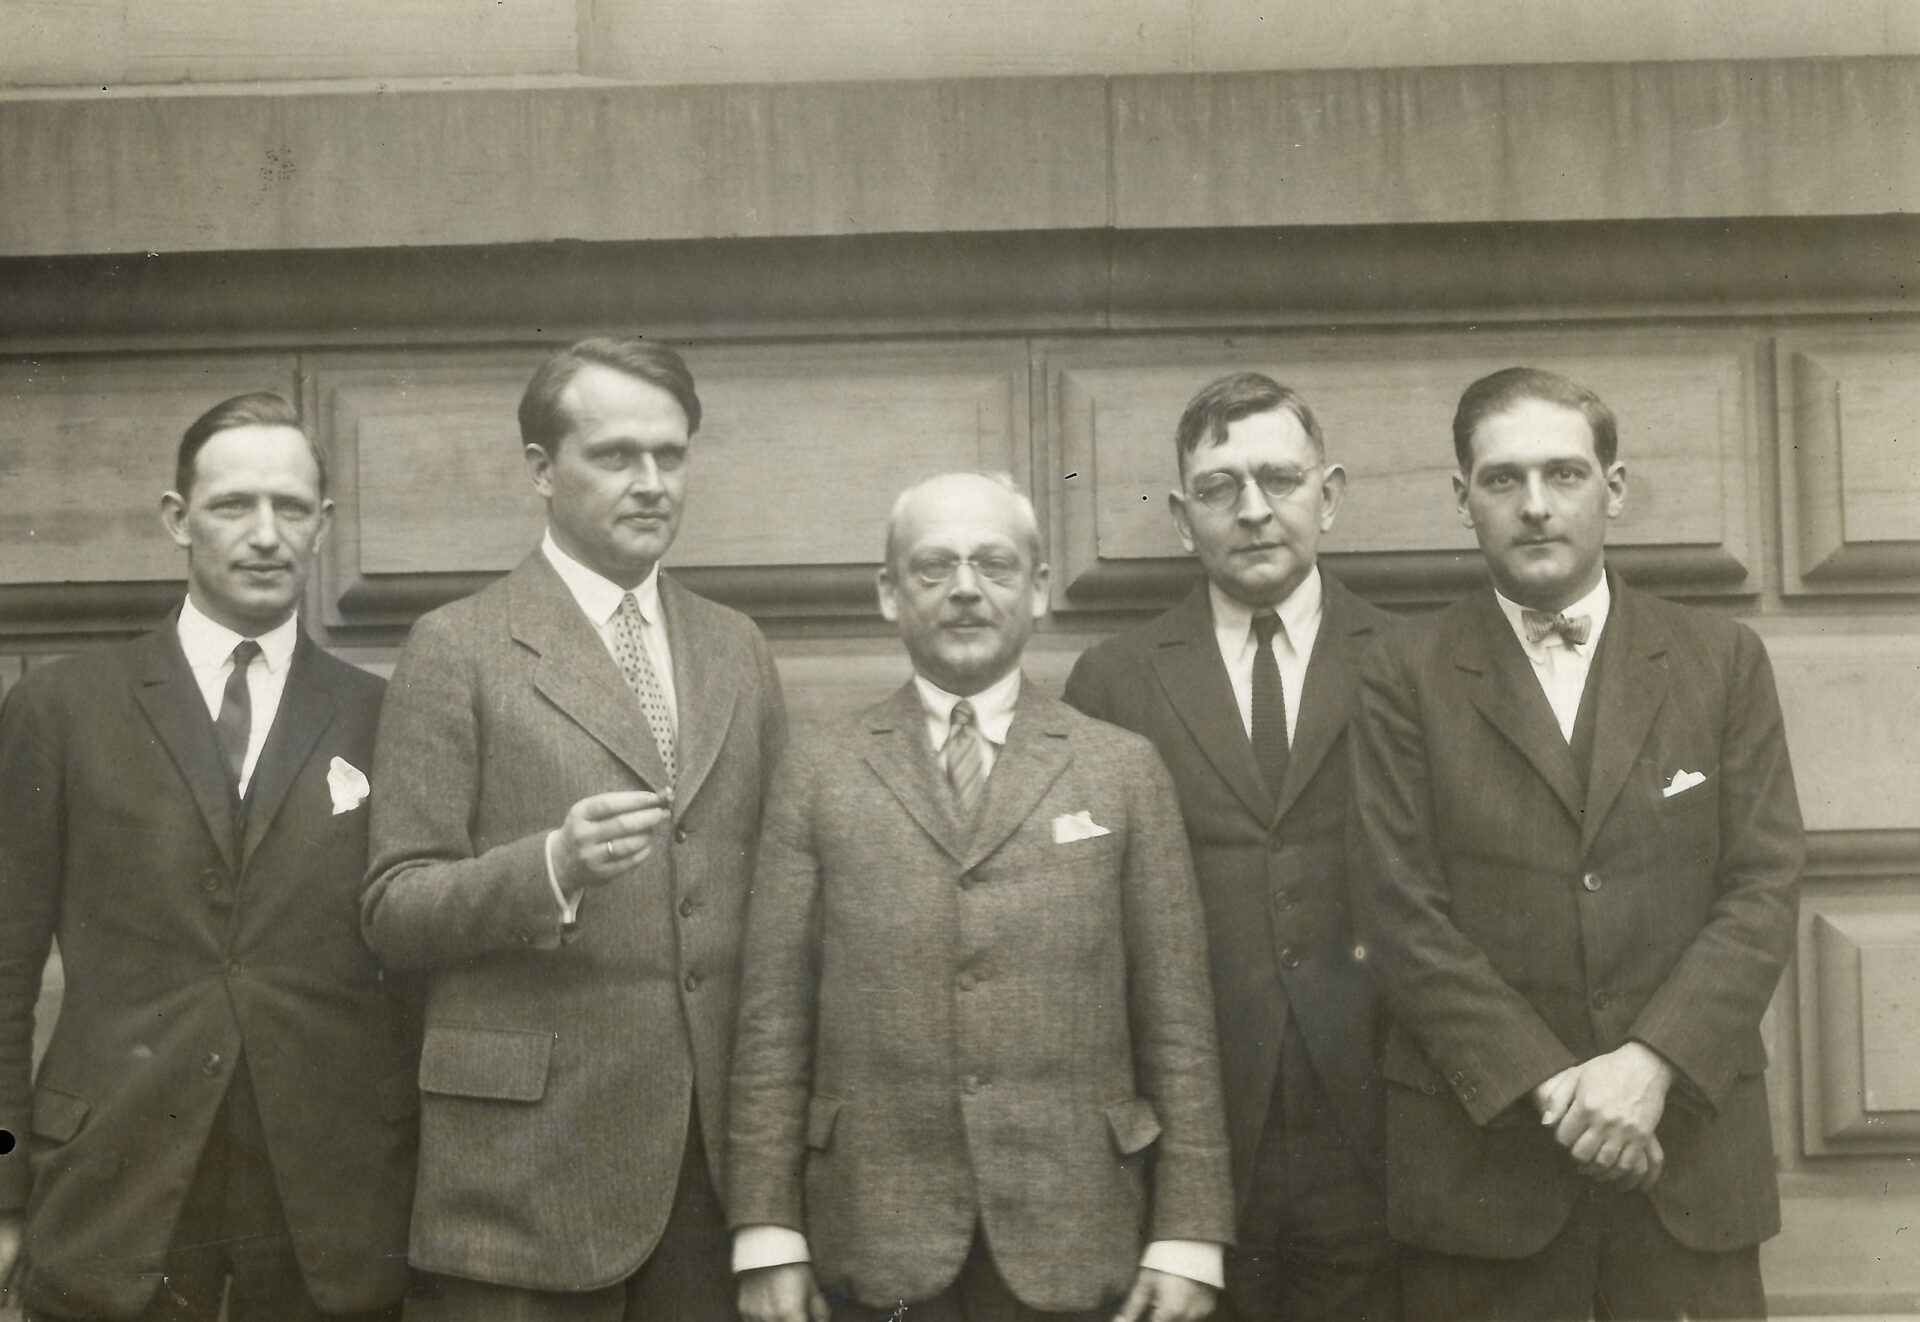 Unbekannter Fotograf, Gruppenfoto v. l. n. r. Ernstotto Graf zu Solms-Laubach, Alfred Wolters, Georg Swarzenski, Ernst Schilling, Oswald Goetz (Kopie), c. 1929, Frankfurt am